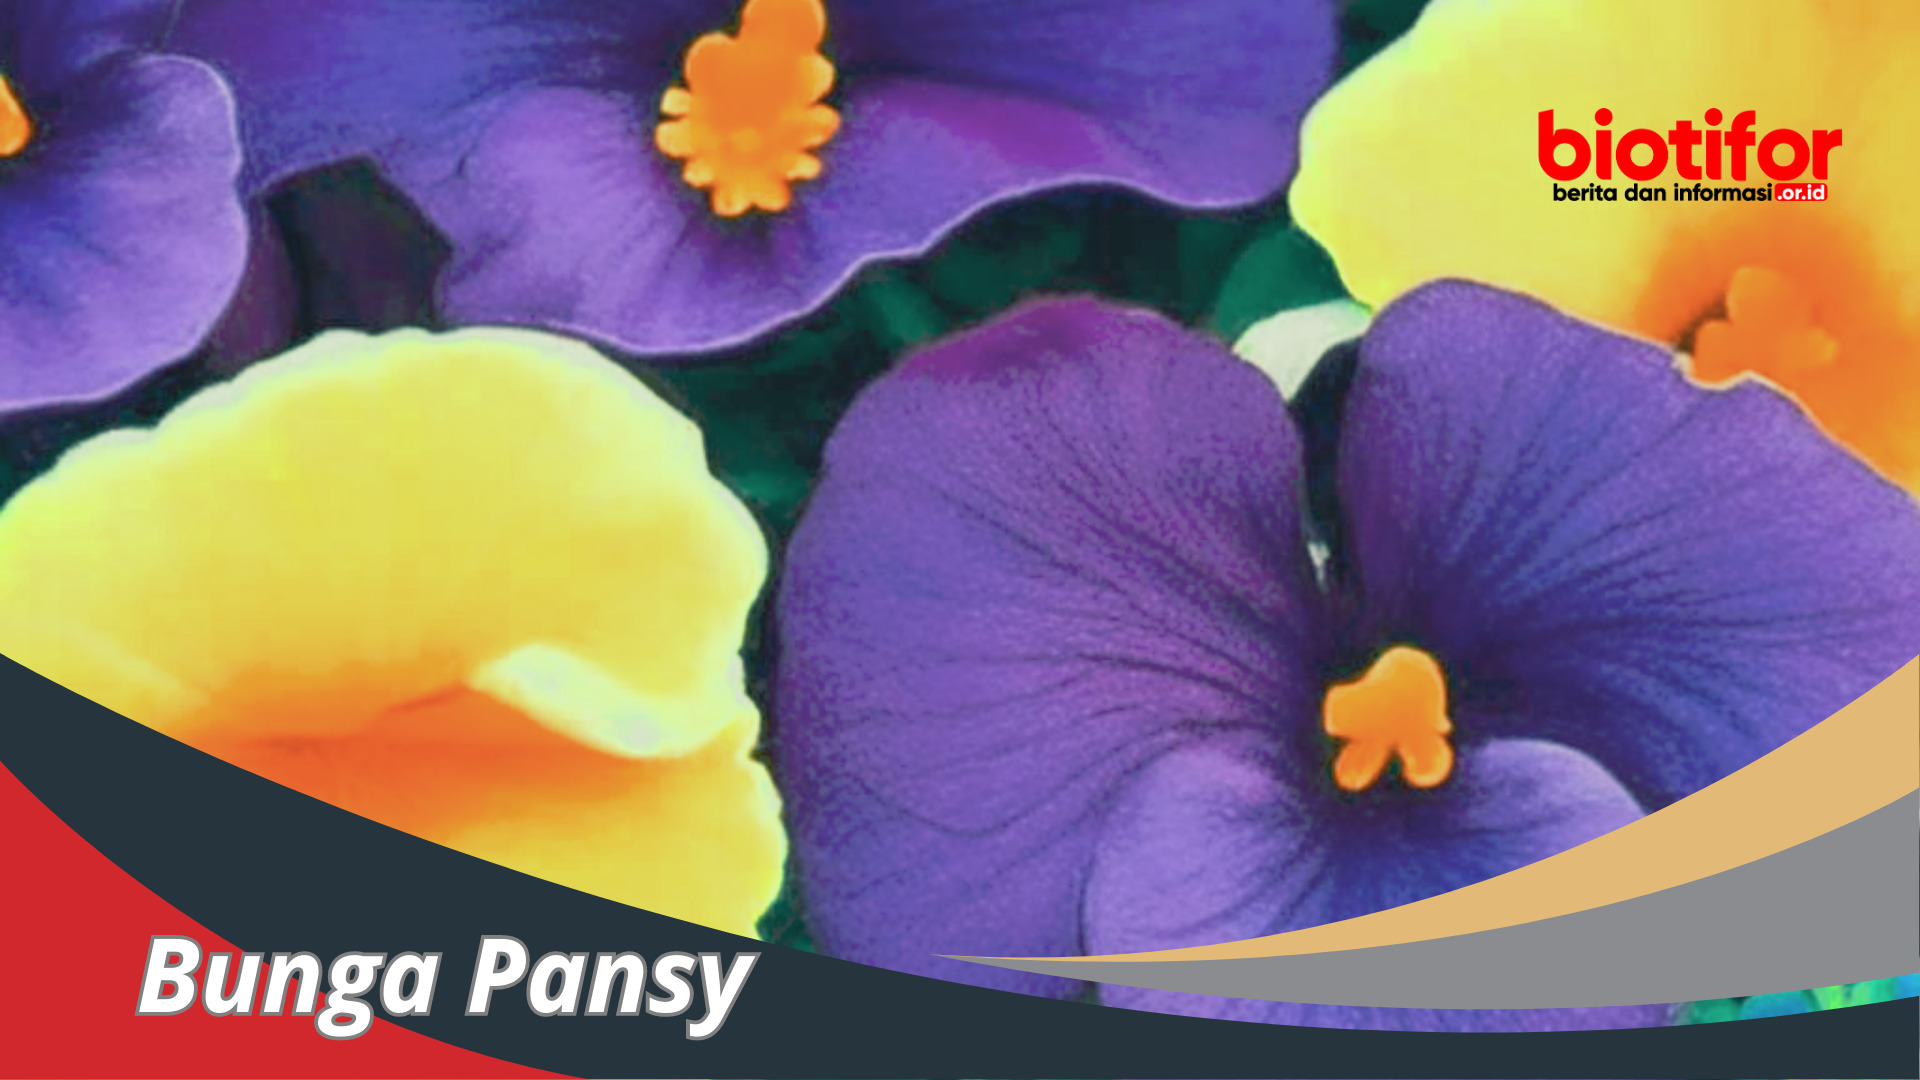 Bunga Pansy